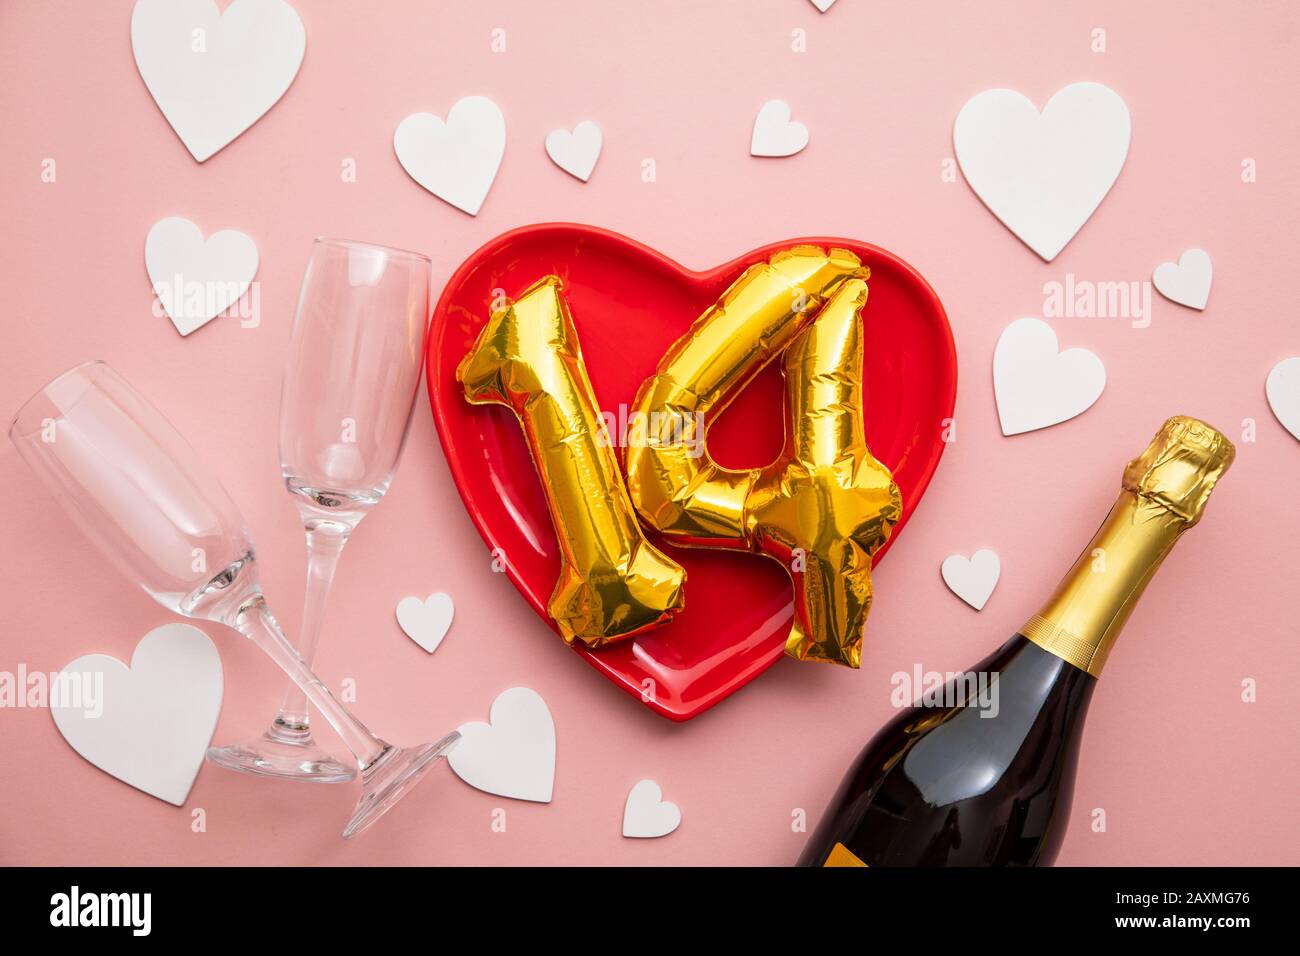 Februar romantischer valentinstag Hintergrund Stockfoto